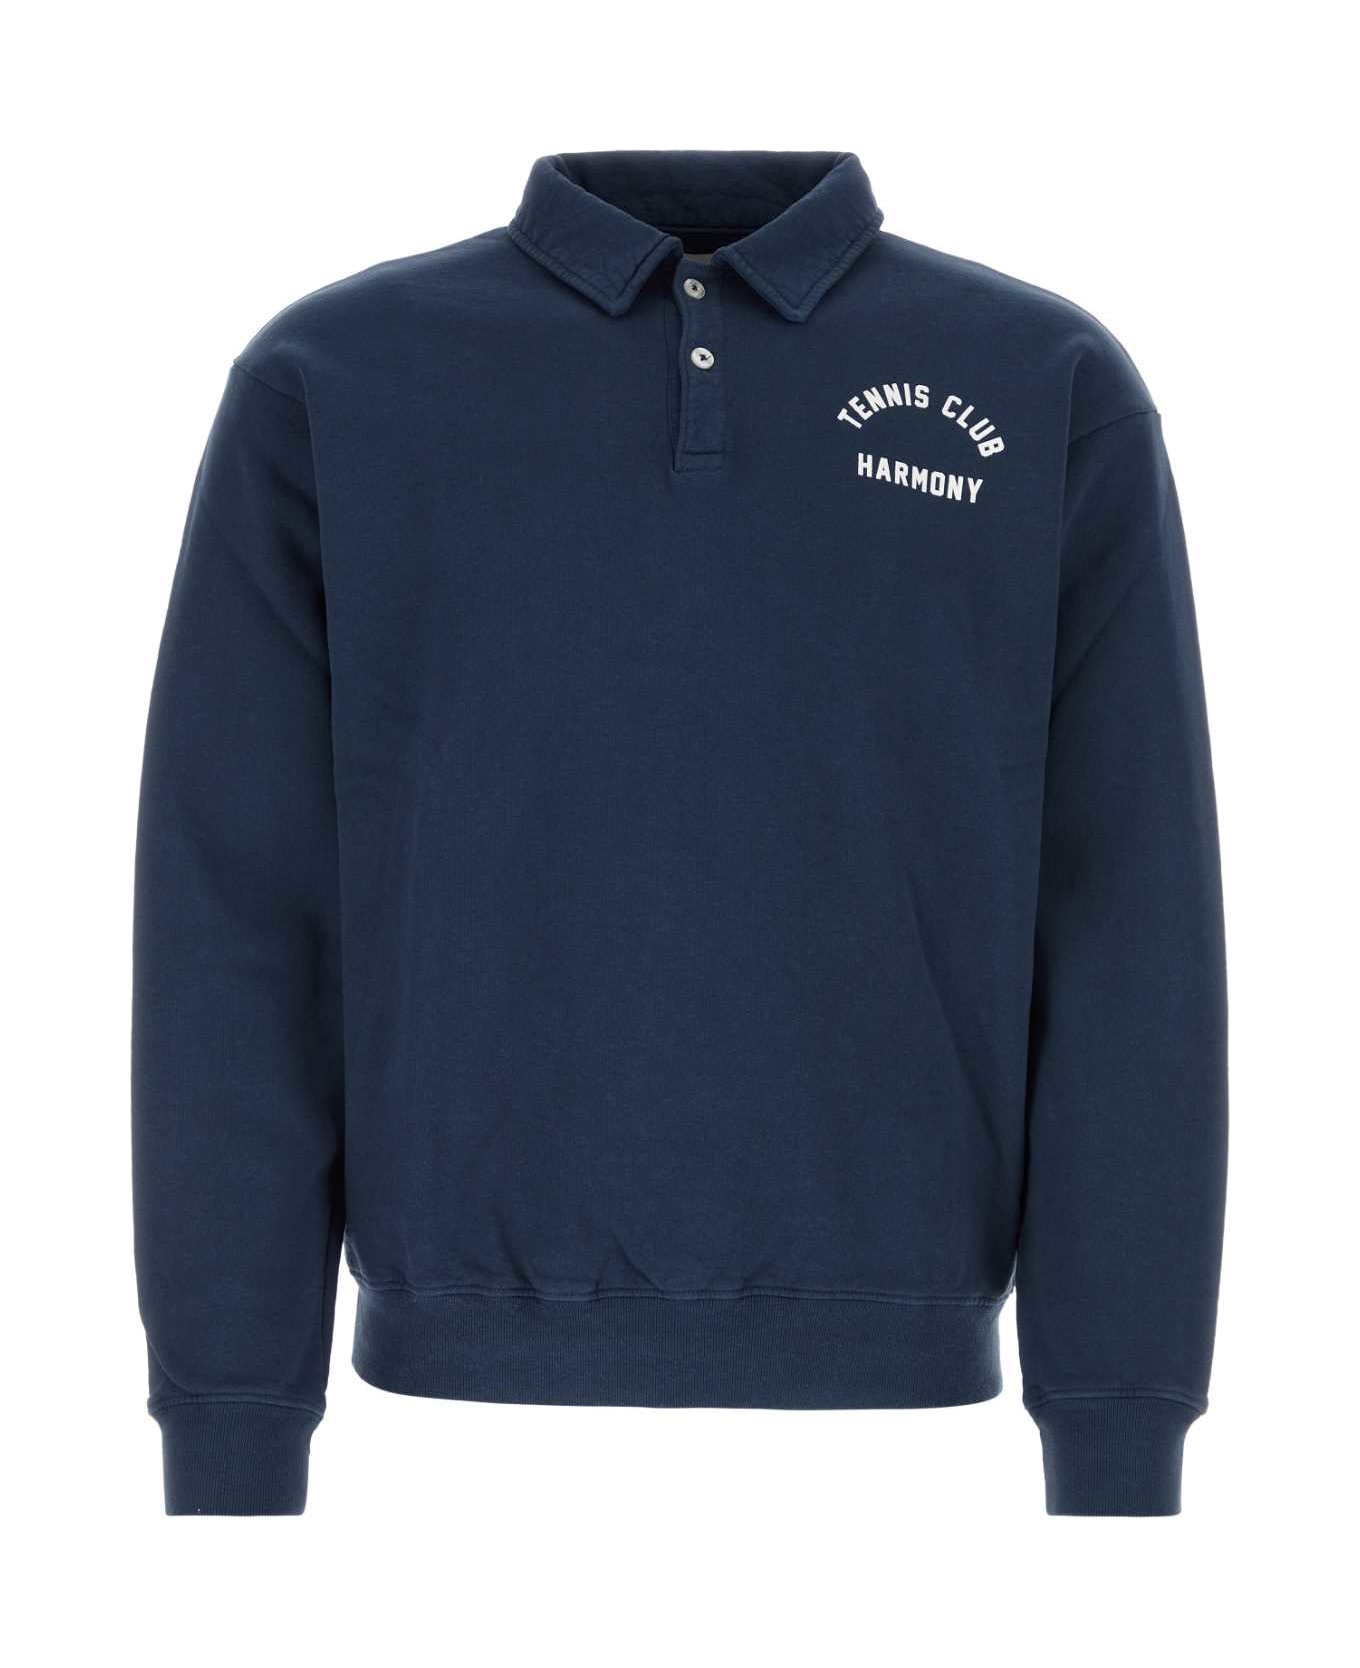 The Harmony Navy Blue Cotton Polo Shirt - 010